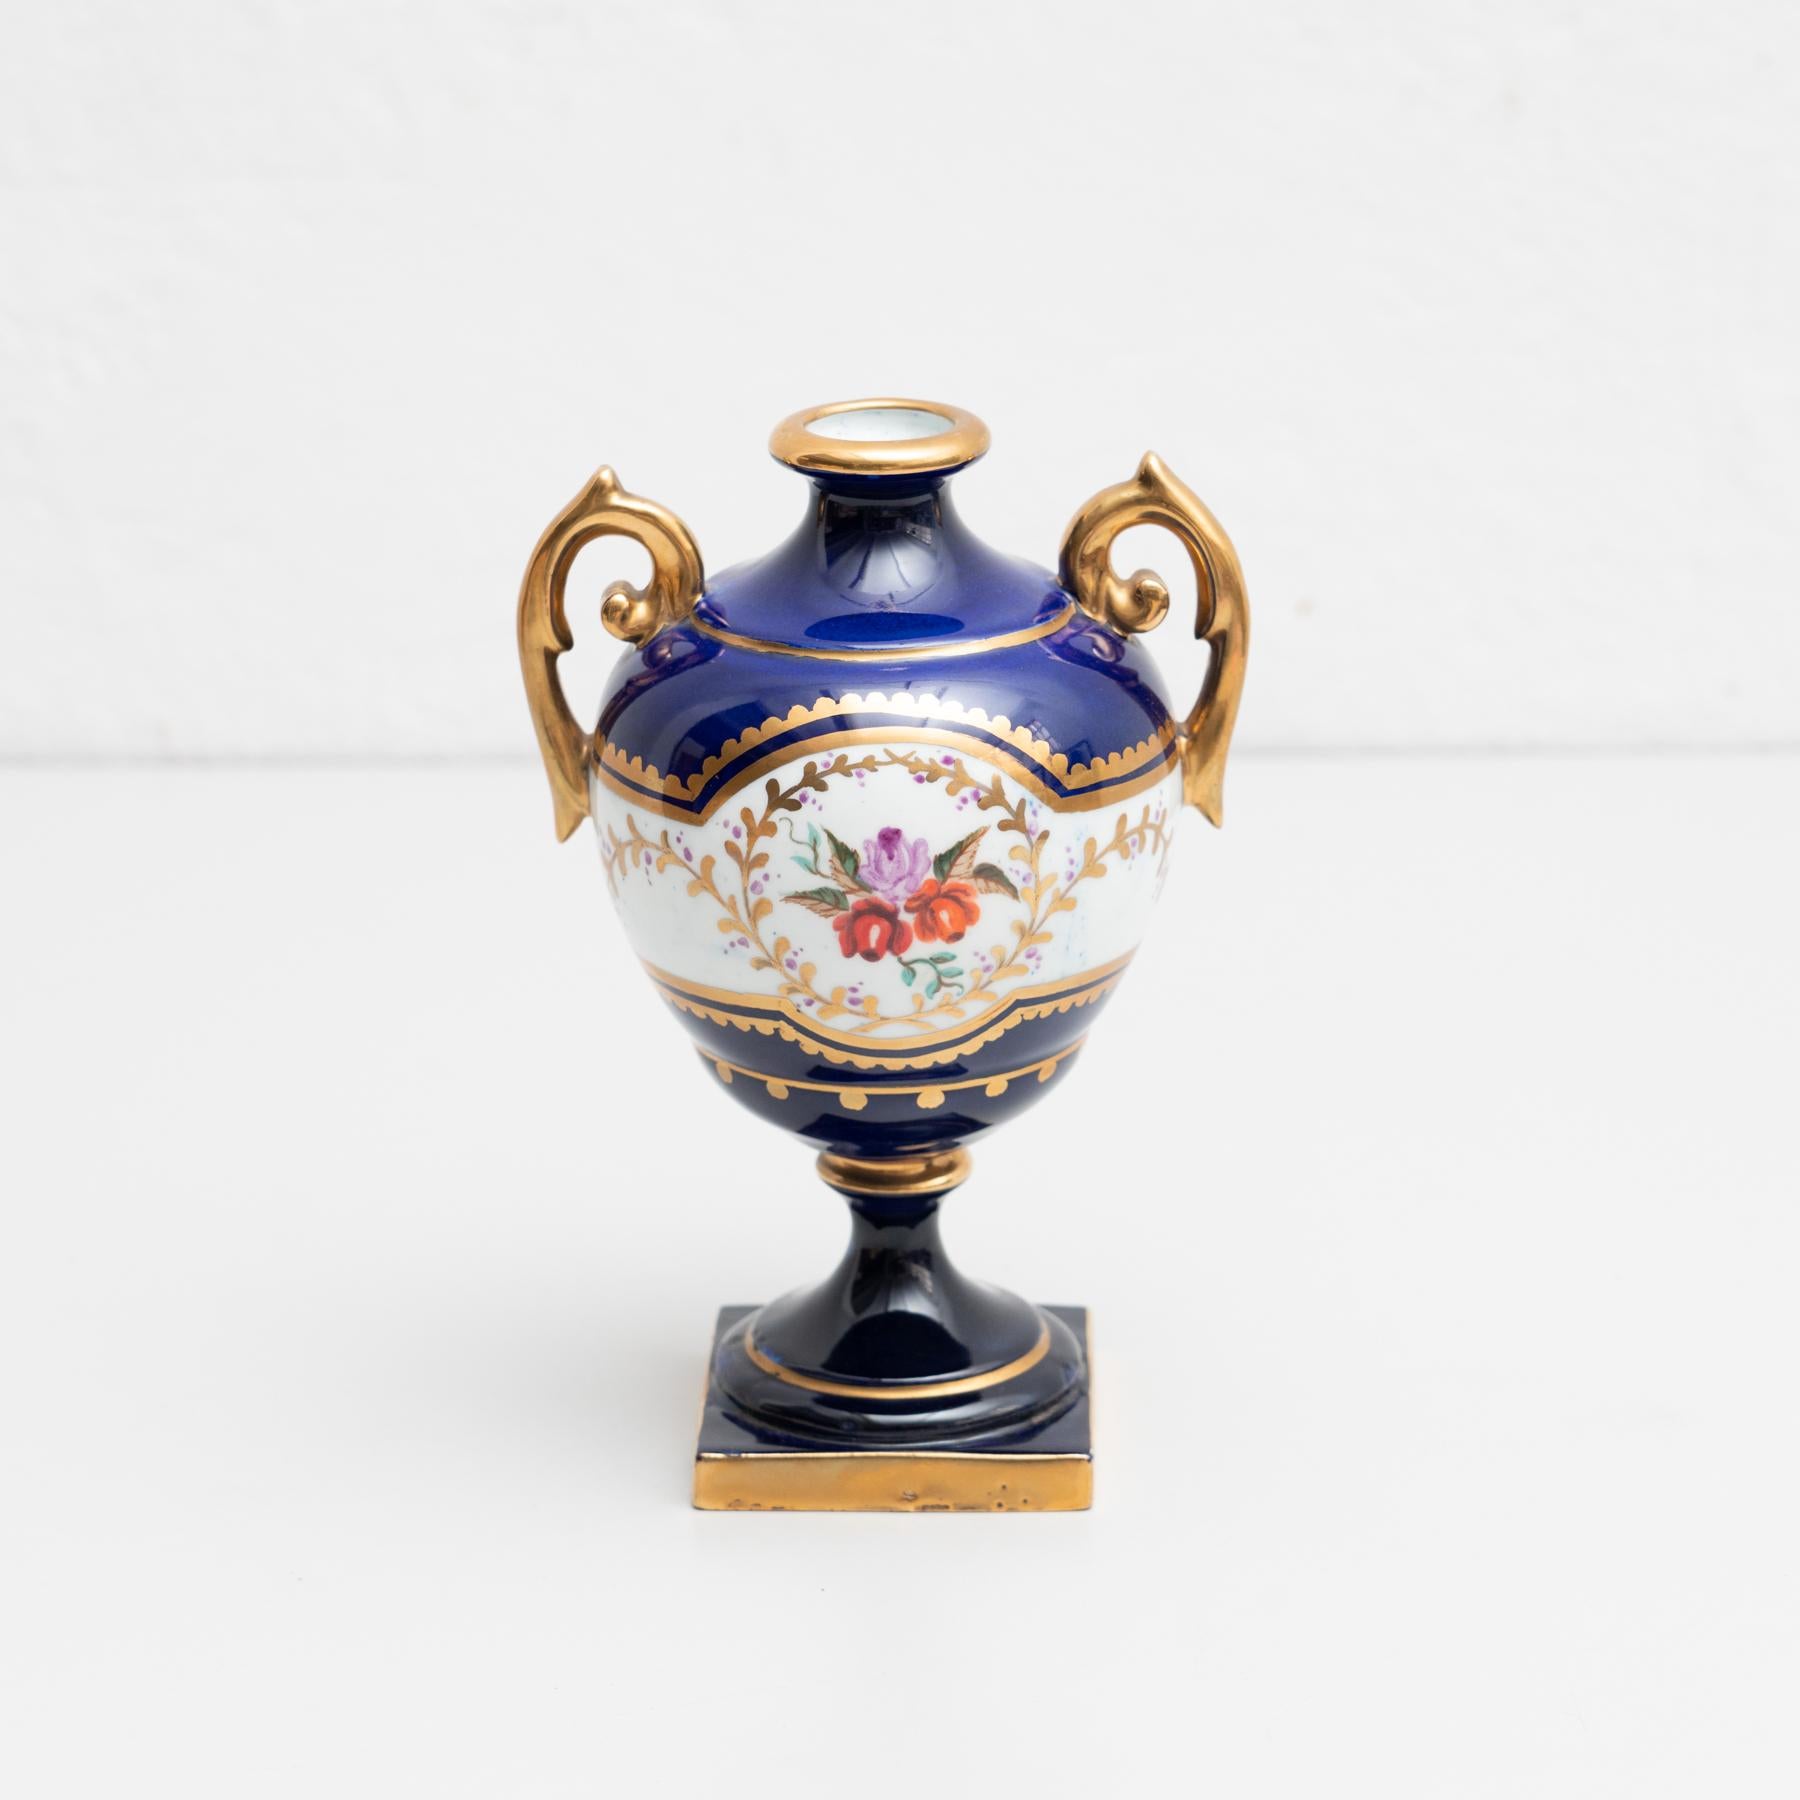 Vase Isabelline en porcelaine peint à la main dans le style Serves. 

Fabriqué par un fabricant inconnu en Espagne, vers le 19e siècle.

En état d'origine, avec une usure mineure conforme à l'âge et à l'utilisation, préservant une belle